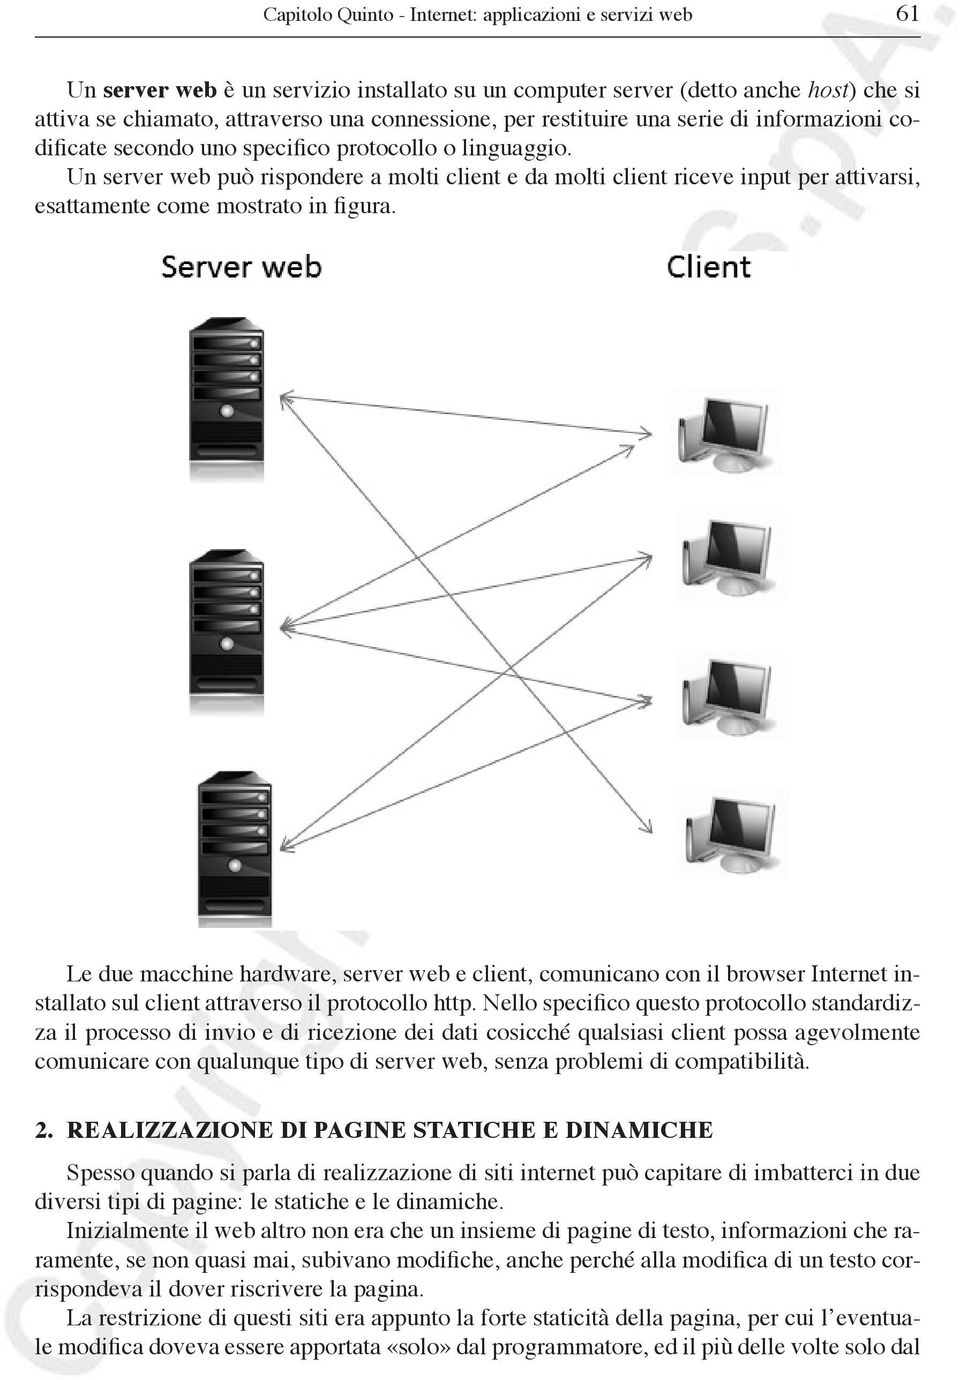 Un server web può rispondere a molti client e da molti client riceve input per attivarsi, esattamente come mostrato in figura.